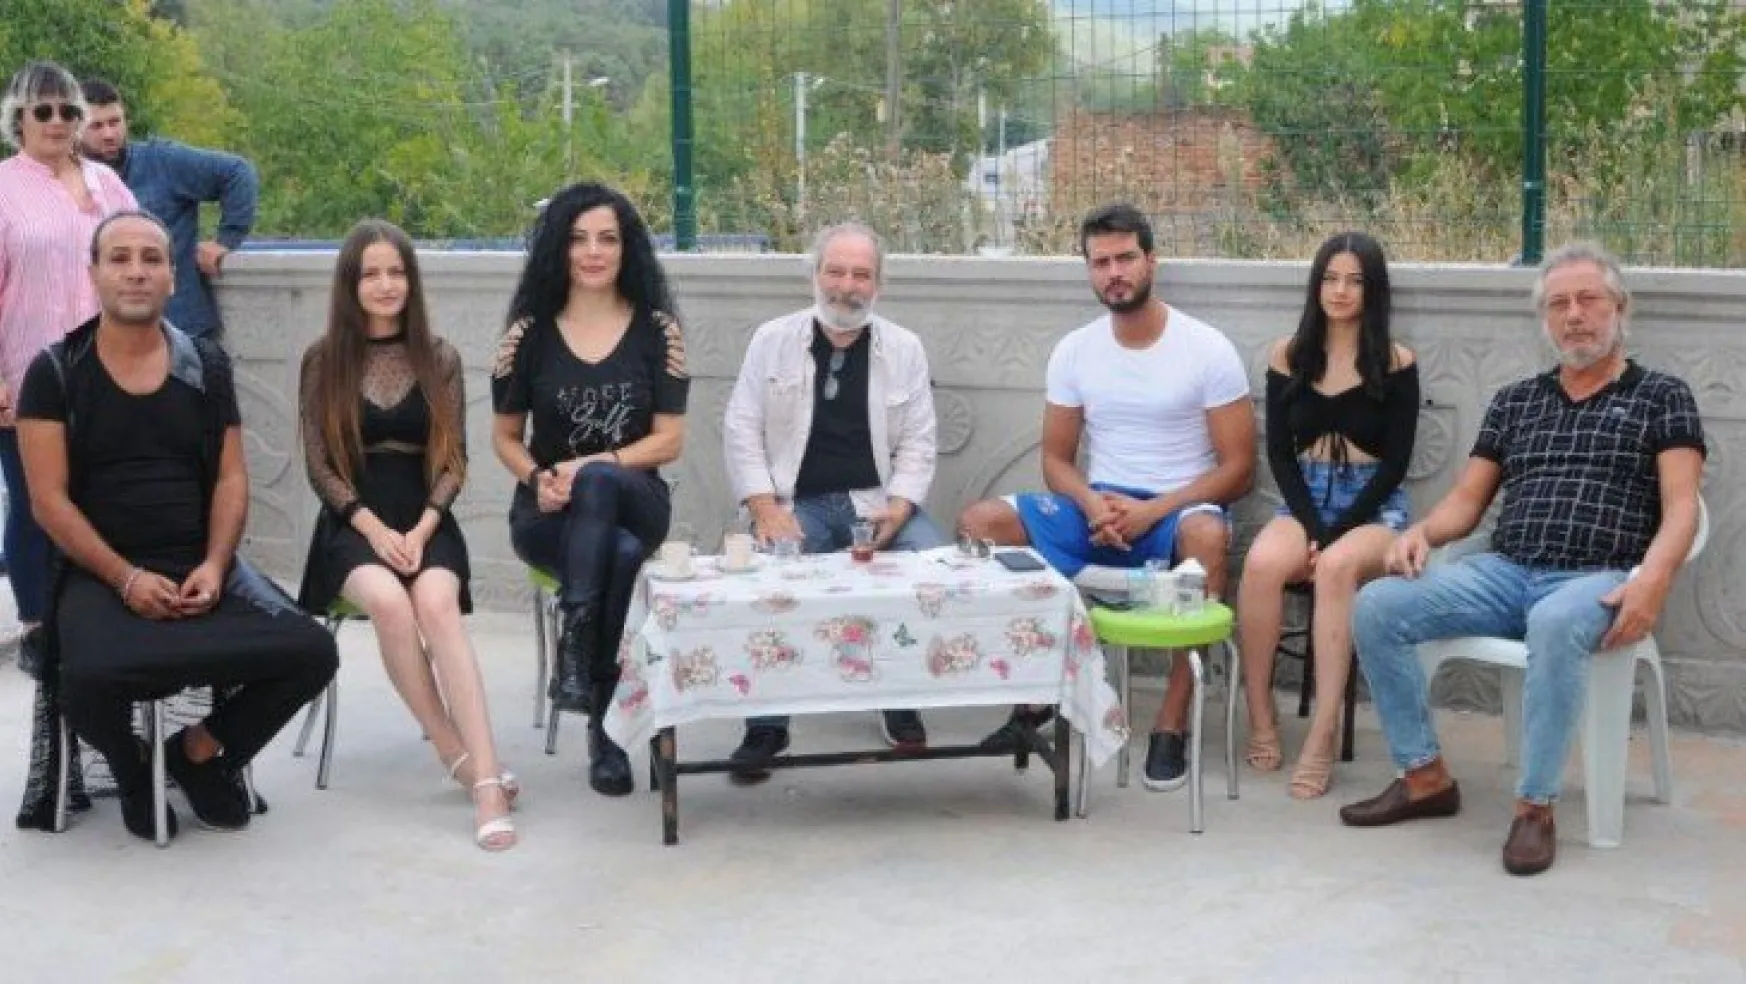 Kocaeli'de gerilim ve aşk konulu 'Nufer' filmi çekiliyor